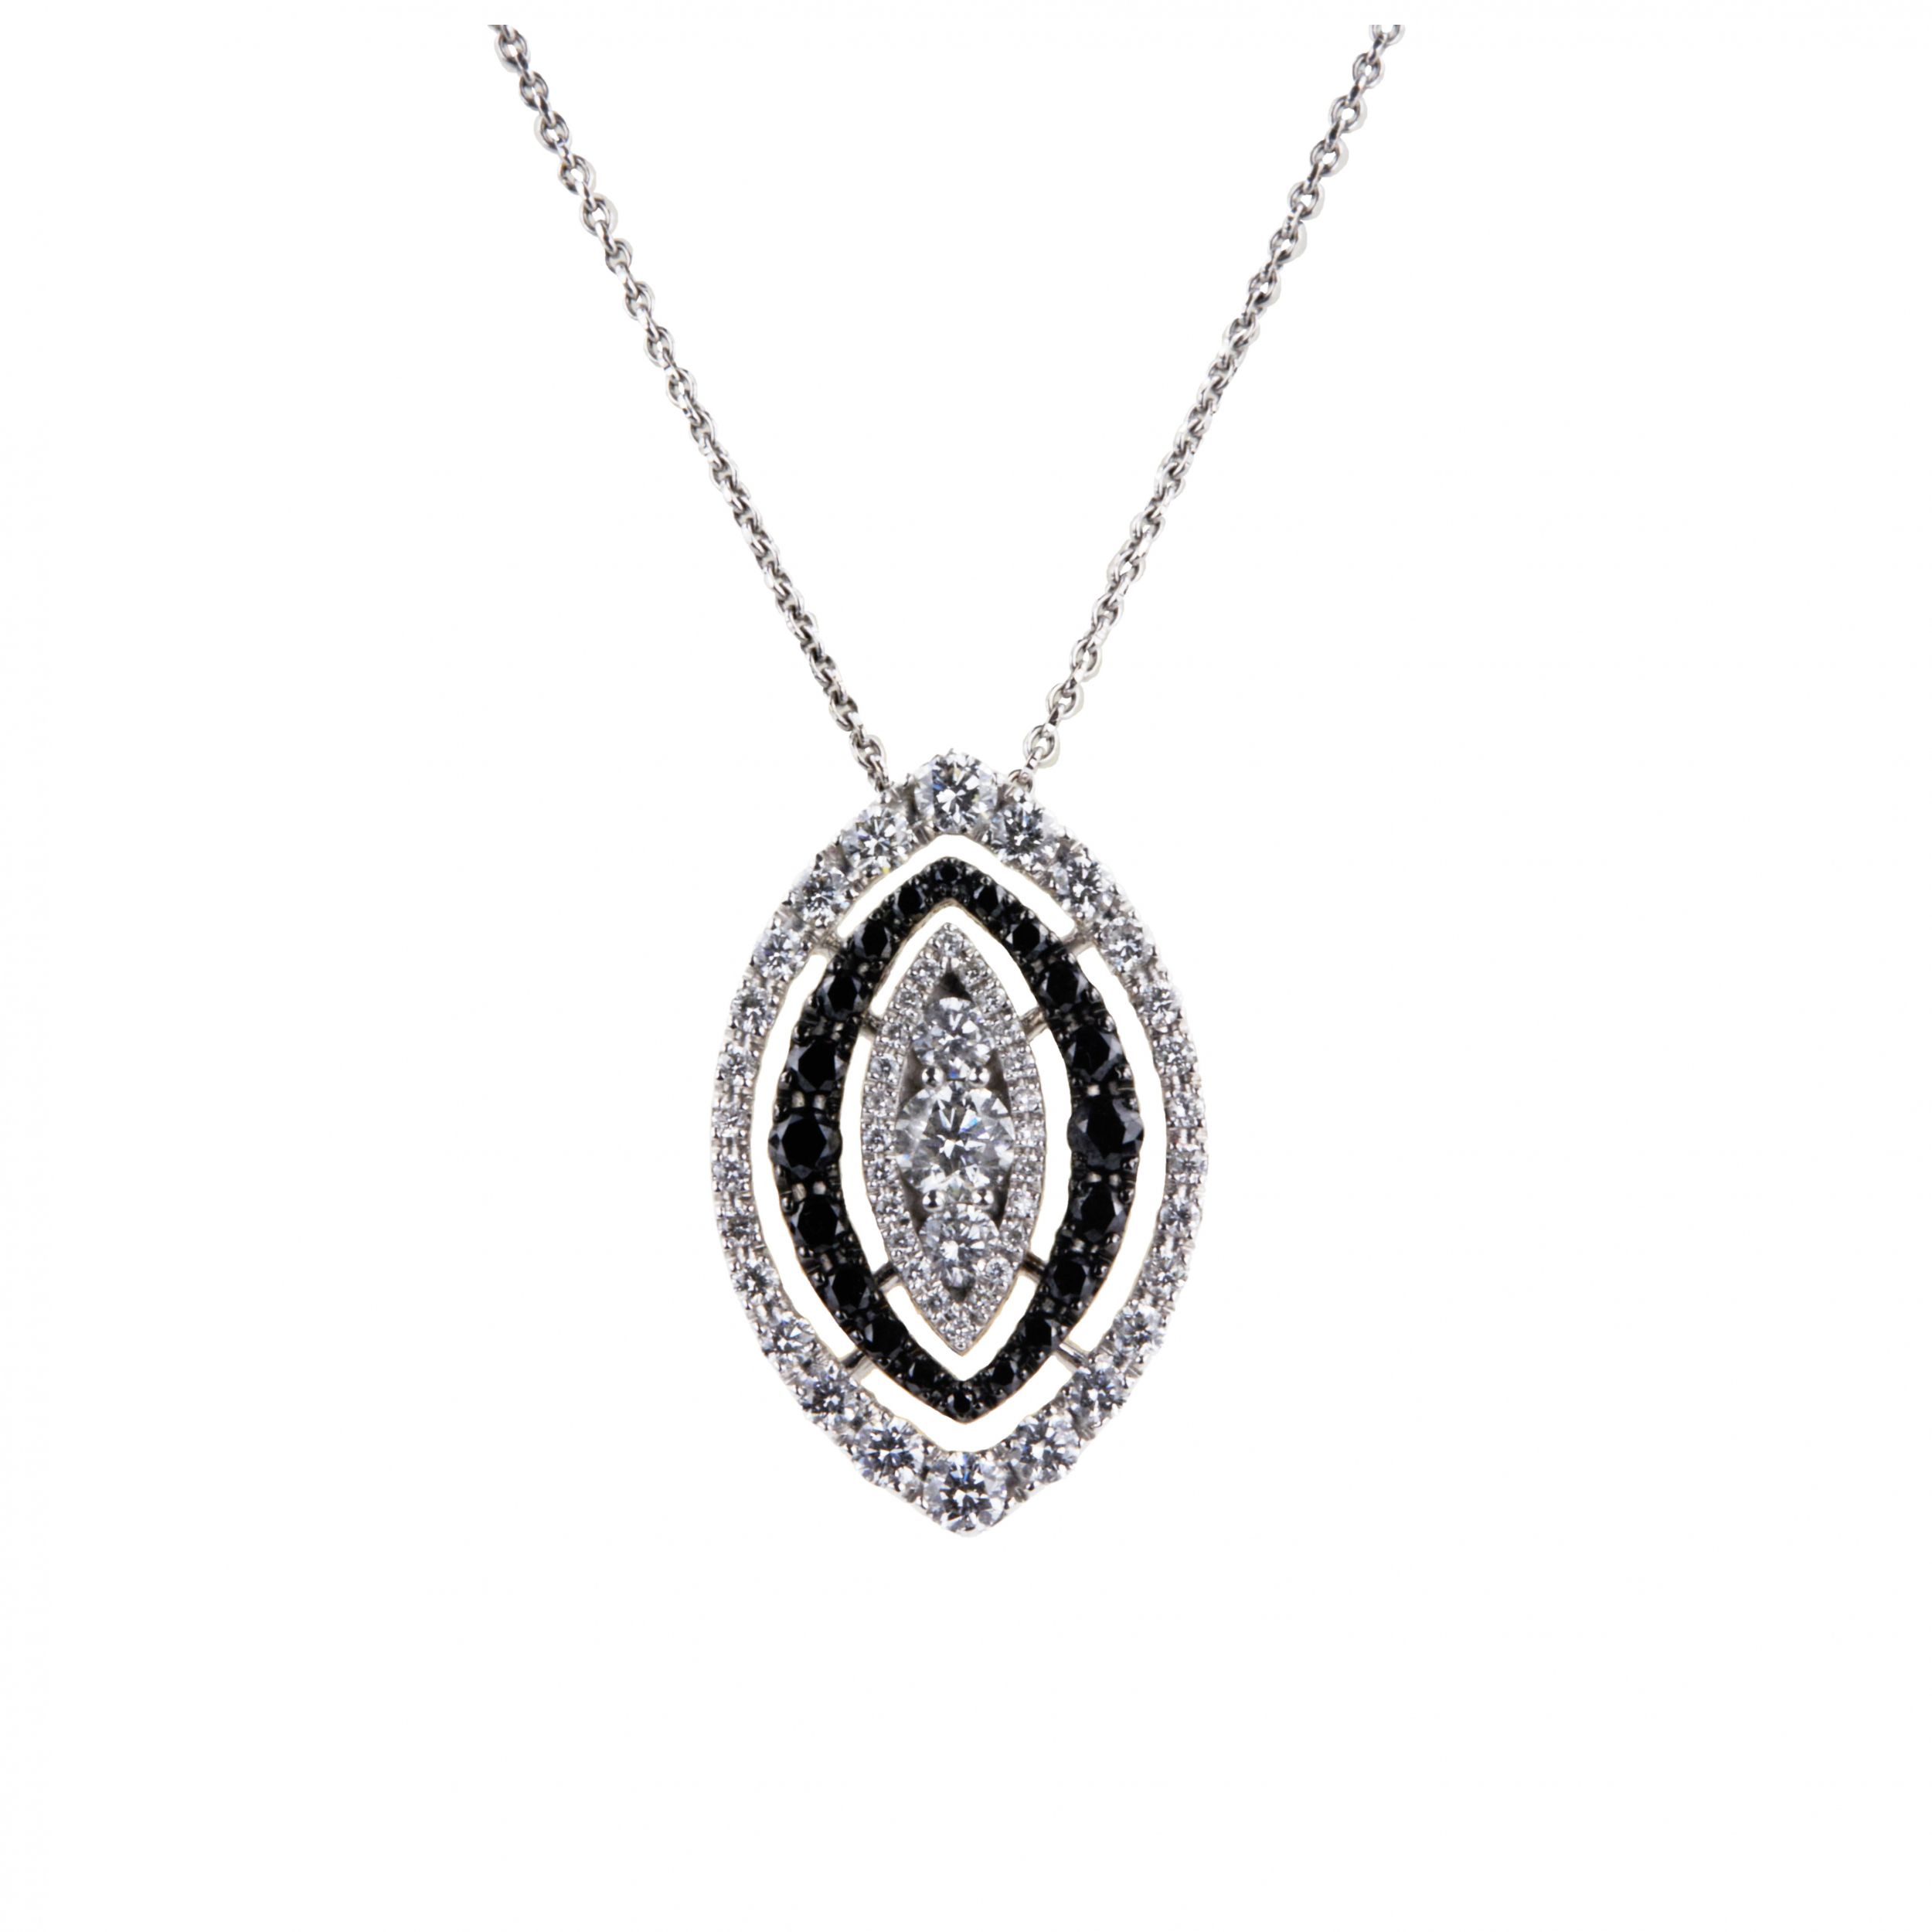 Pendant-with-a-chain-of-white-and-black-diamonds-Giorgio-Visconti-